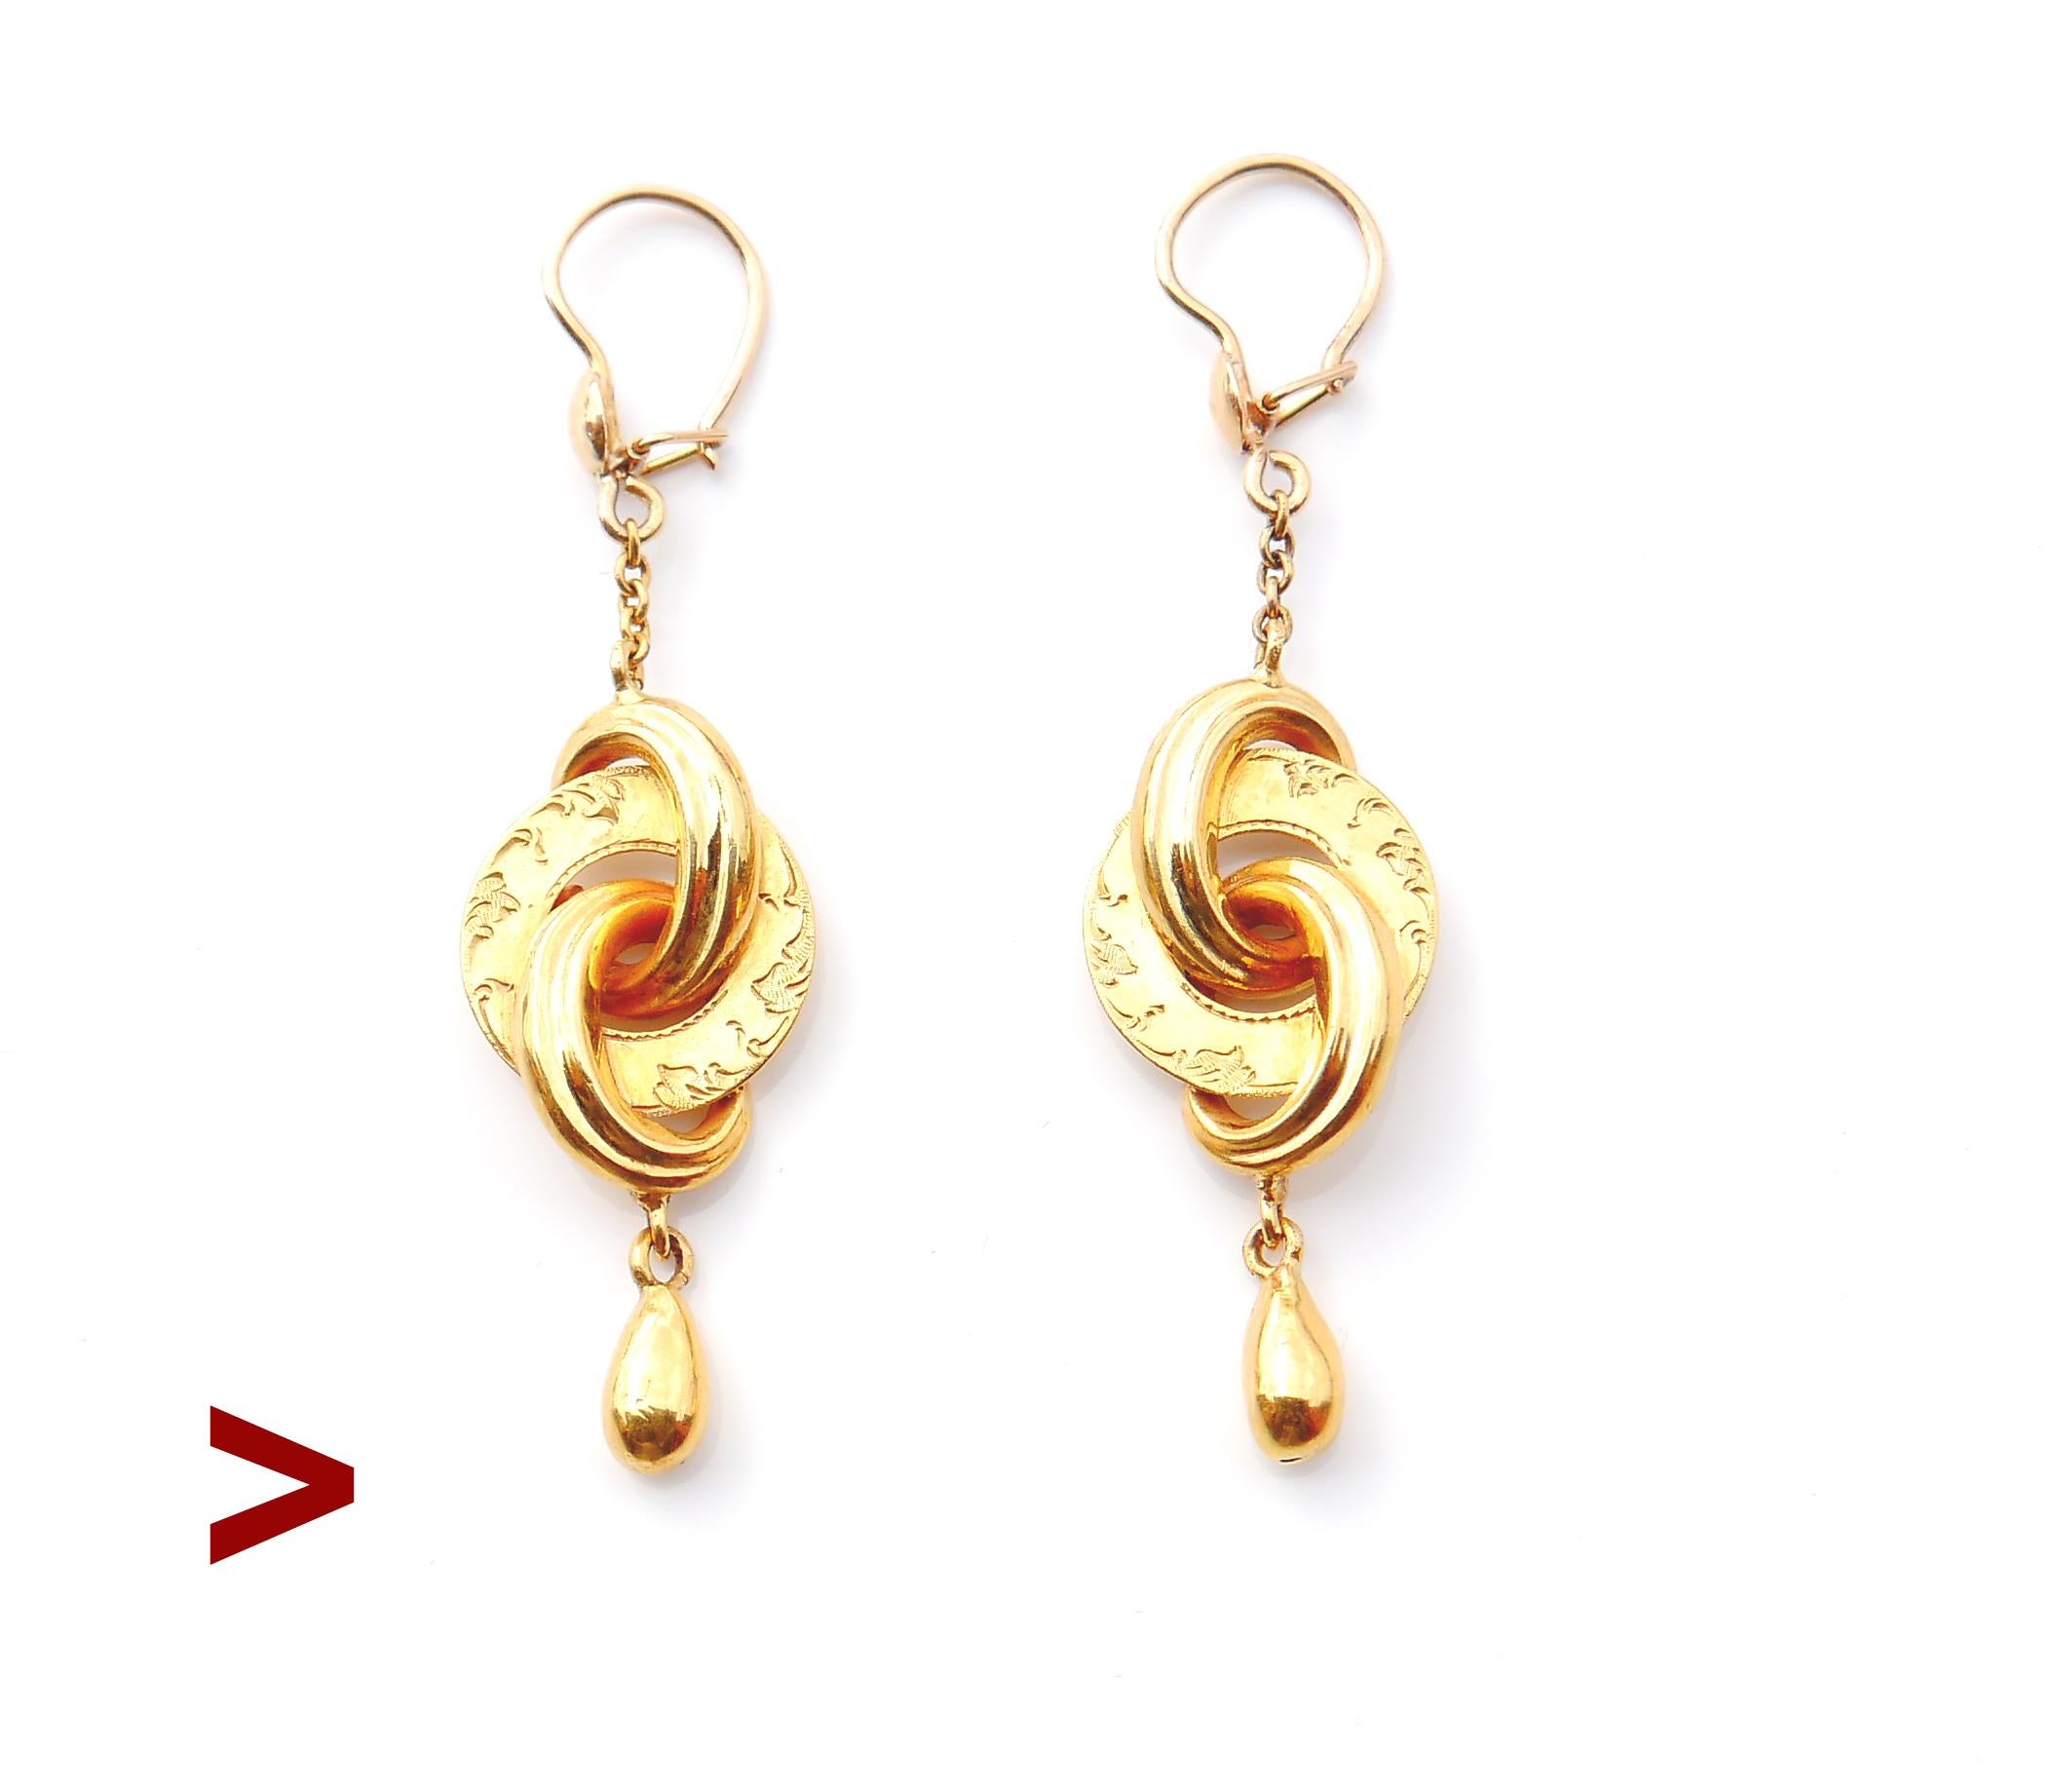 Ein Paar antike Ohrringe mit Körpern in Form von verketteten Scheiben oder ewigen Knoten aus massivem 18-karätigem Gelbgold mit frei hängenden tropfenförmigen Anhängern.

Jede der drei Scheiben hat ein Volumen und alle drei sind innen hohl, die